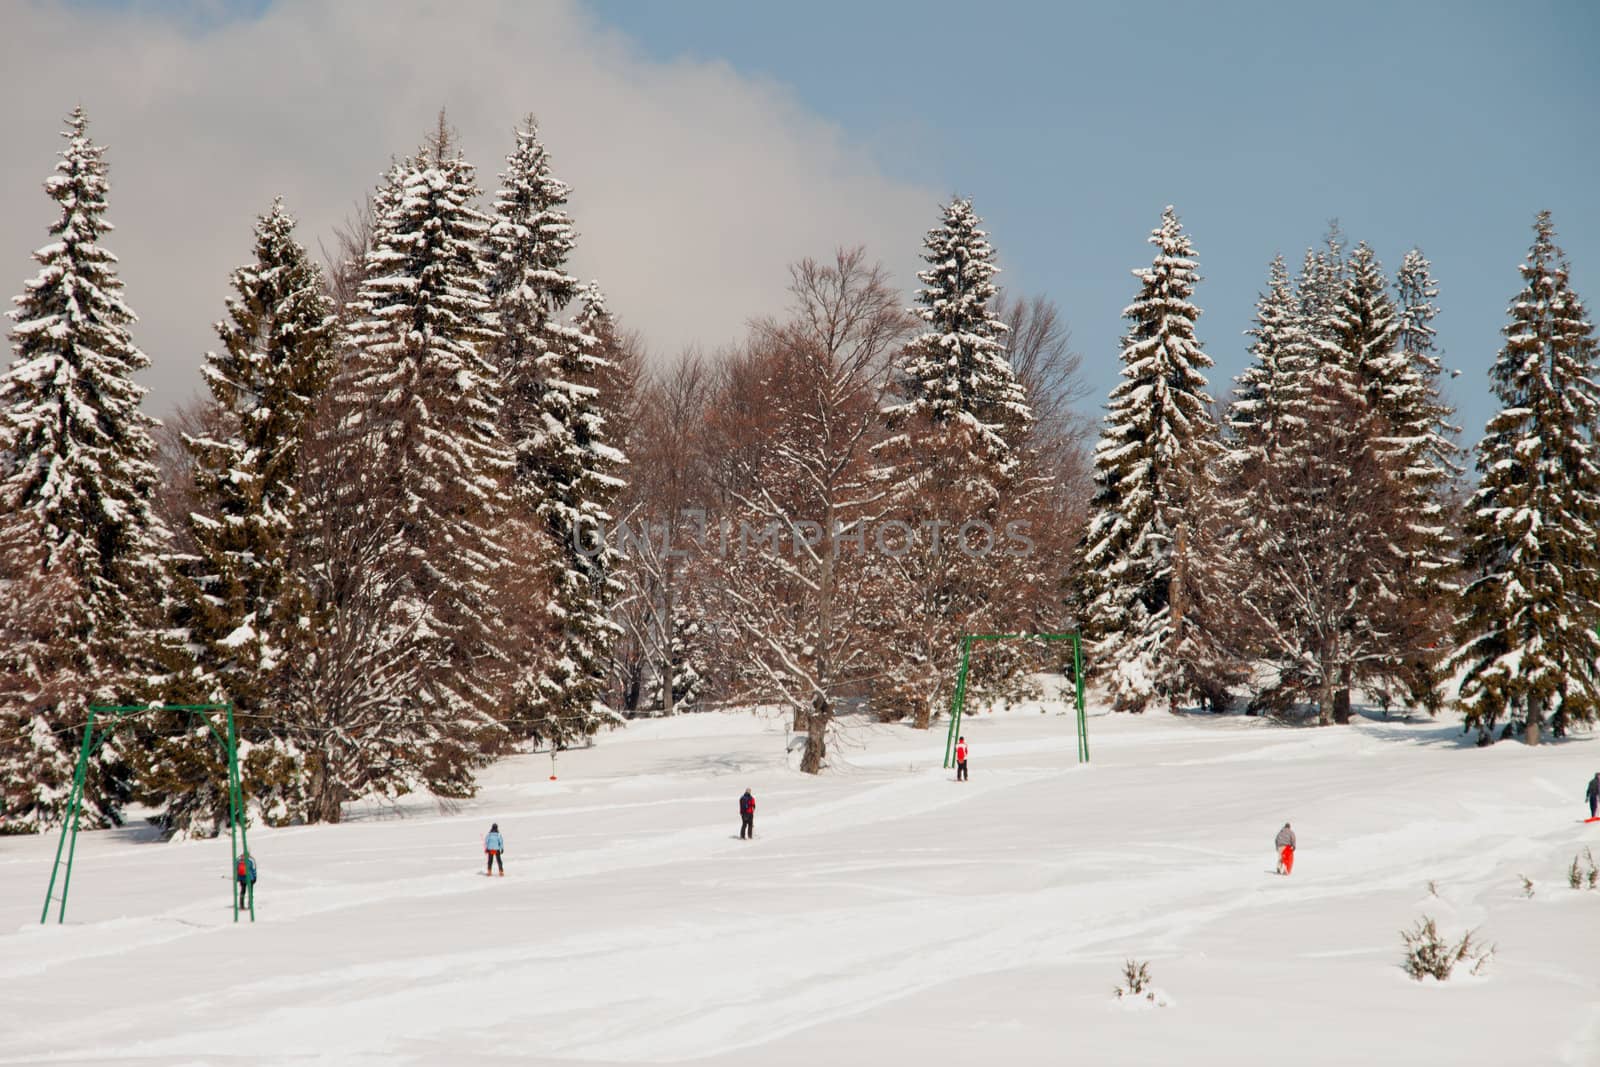 Ski slope by renegadewanderer